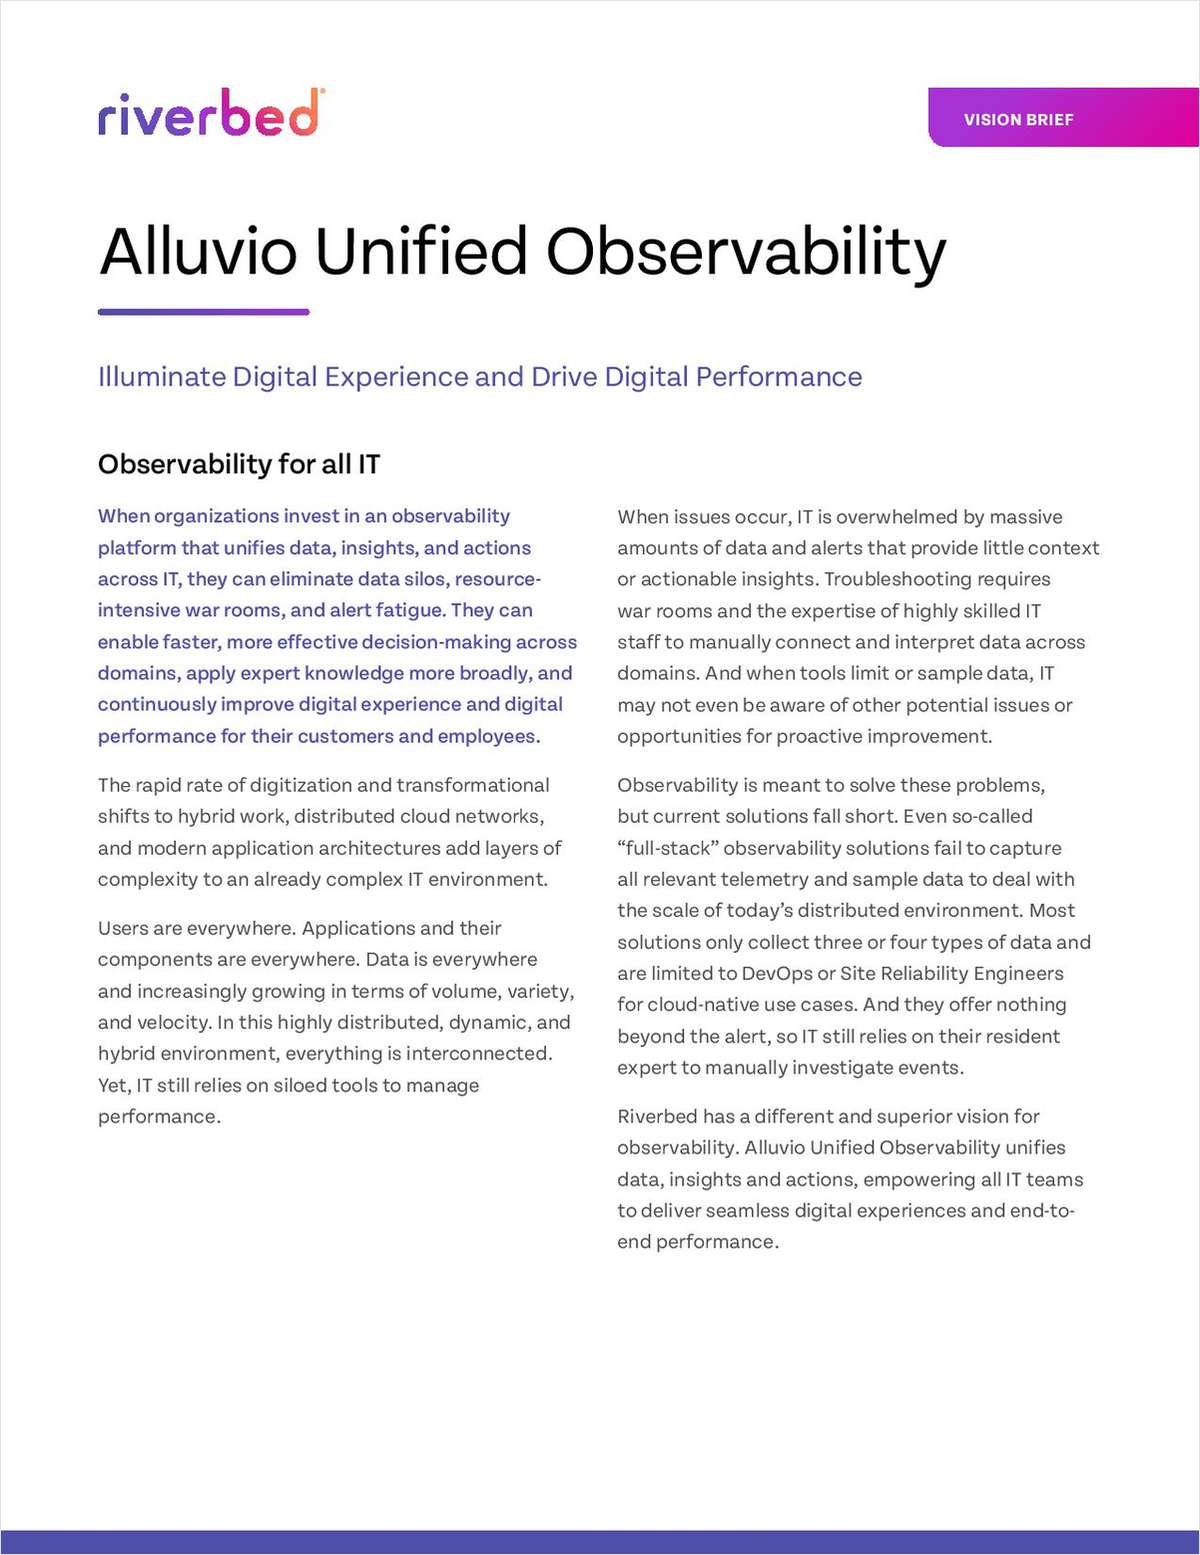 Unified Observability - Alluvio